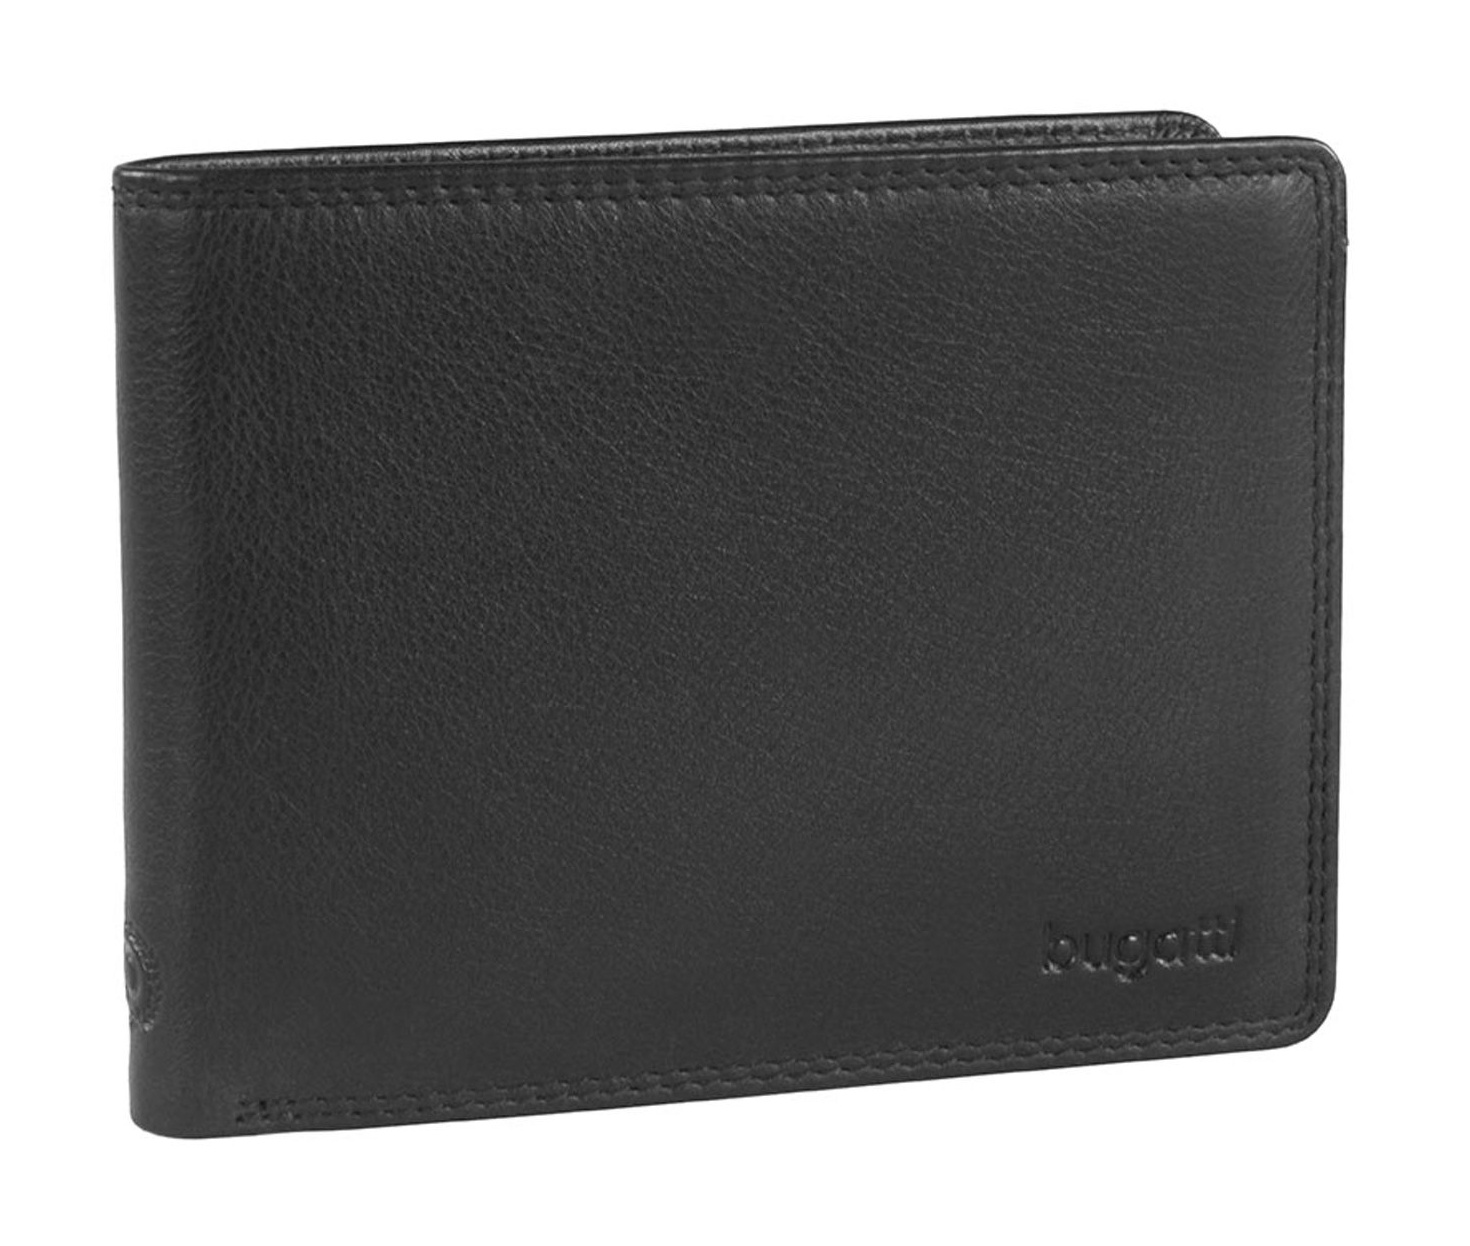 Pánská peněženka Bugatti Simbiosi flap 493166-01 černá